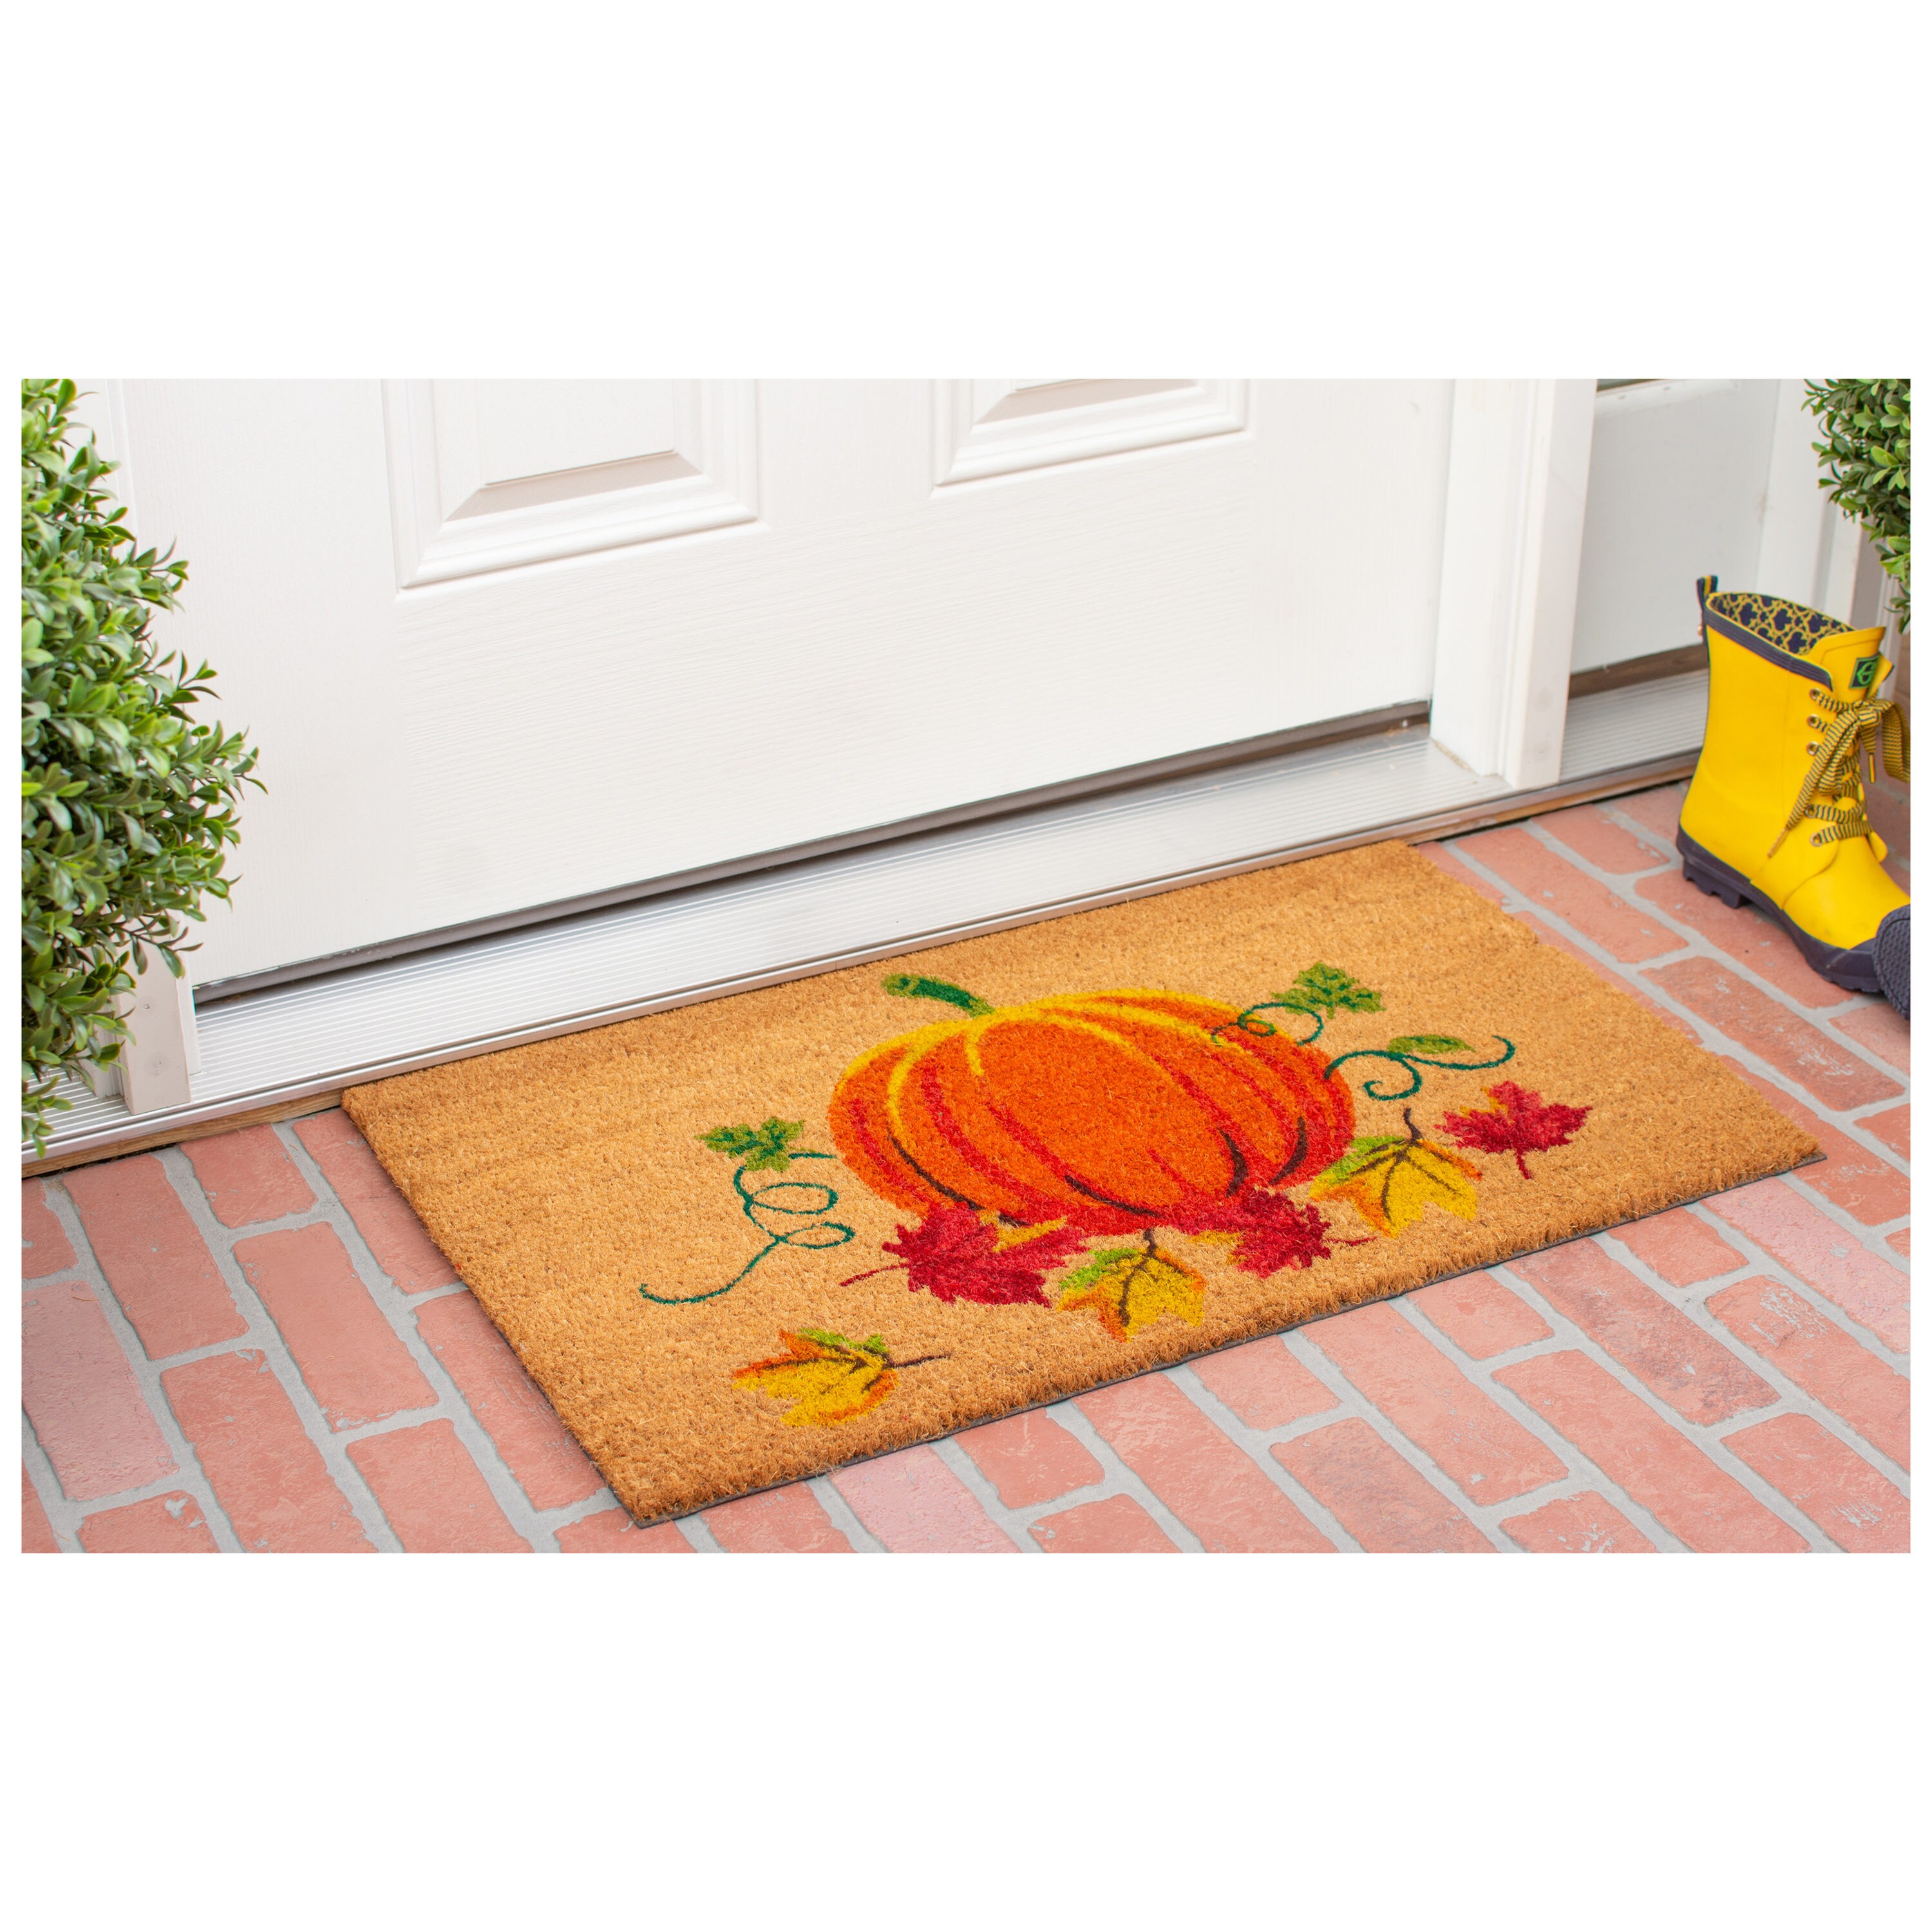 Calloway Mills Hello Pumpkin Doormat, 24 x 48